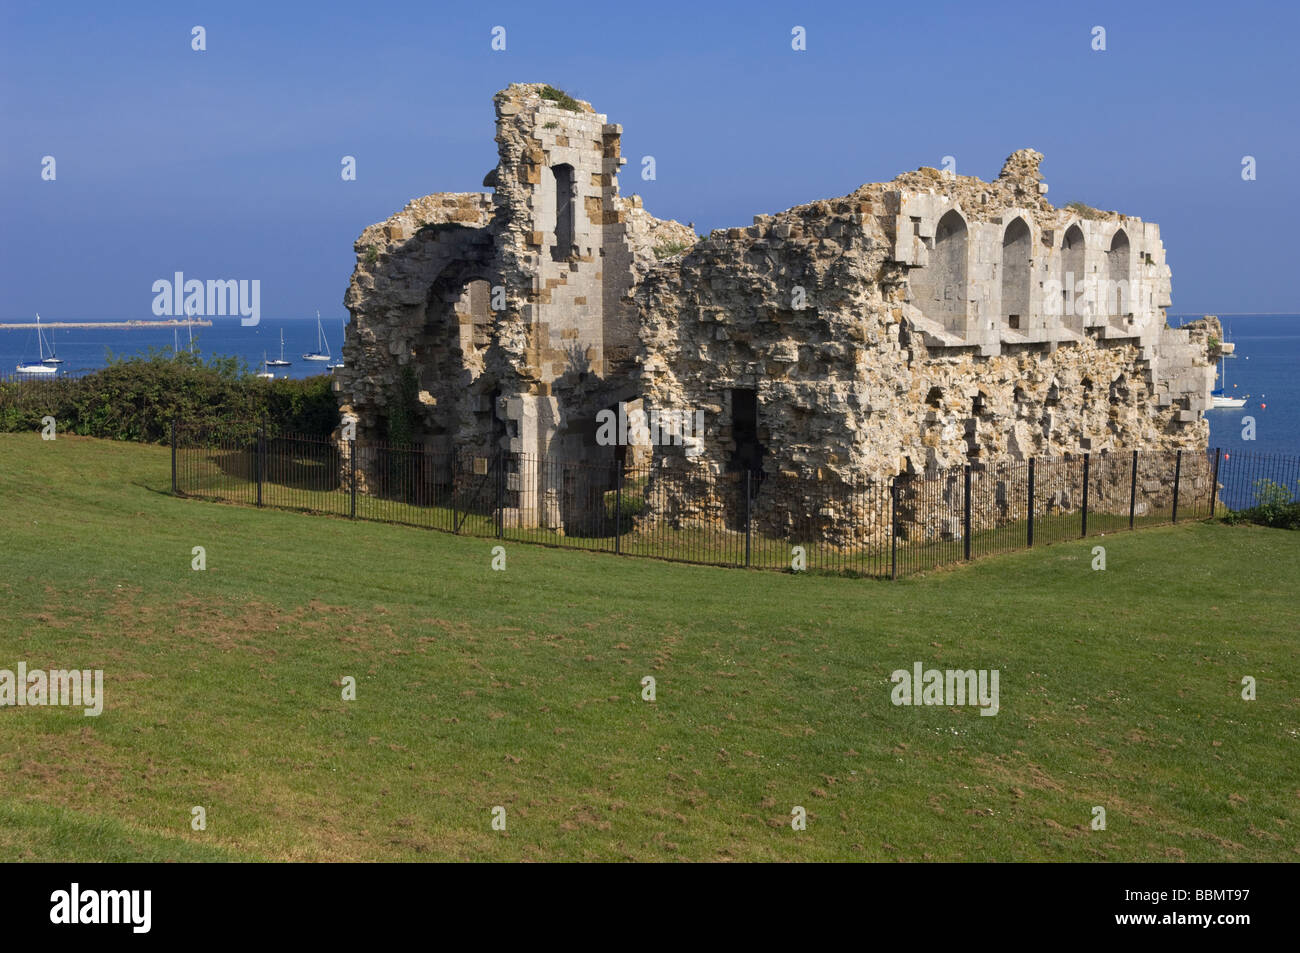 Les ruines de château de Sandsfoot surplombant le port de Portland, dans le Dorset, Angleterre. Banque D'Images